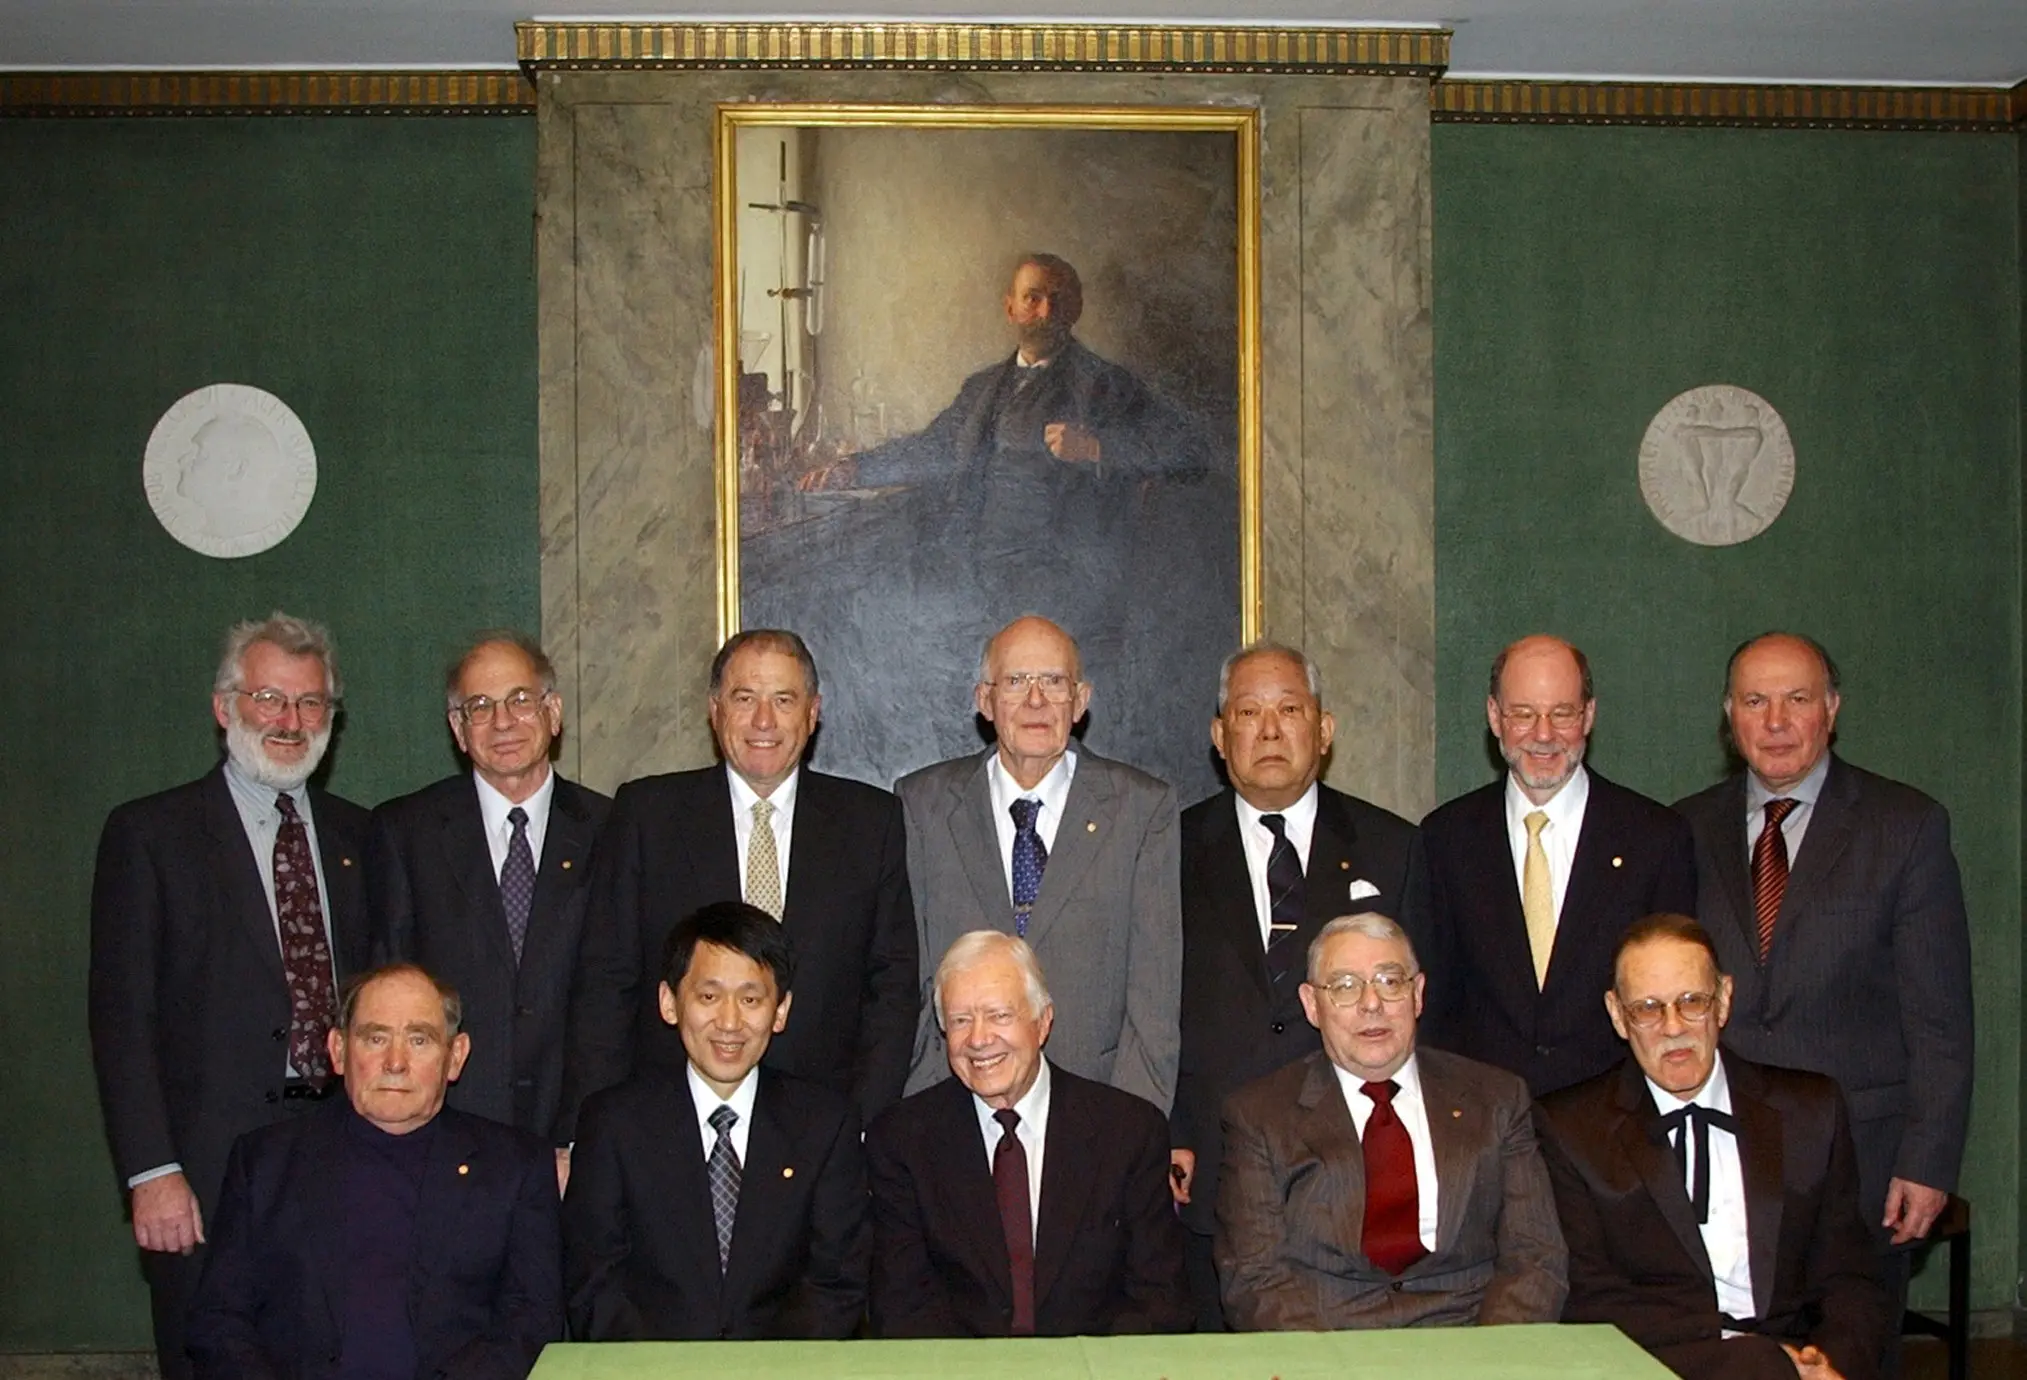 O professor Daniel Kahneman (em pé, segundo a partir da esquerda) reuniu-se com outros laureados com o Nobel de 2002 em Estocolmo, em Dezembro de 2002. Entre eles estava o ex-presidente Jimmy Carter (sentado, ao centro), que recebeu o Prémio da Paz. (Crédito da fotografia: Cortesia Fundação Nobel/Pressens Bild, via Associated Press)